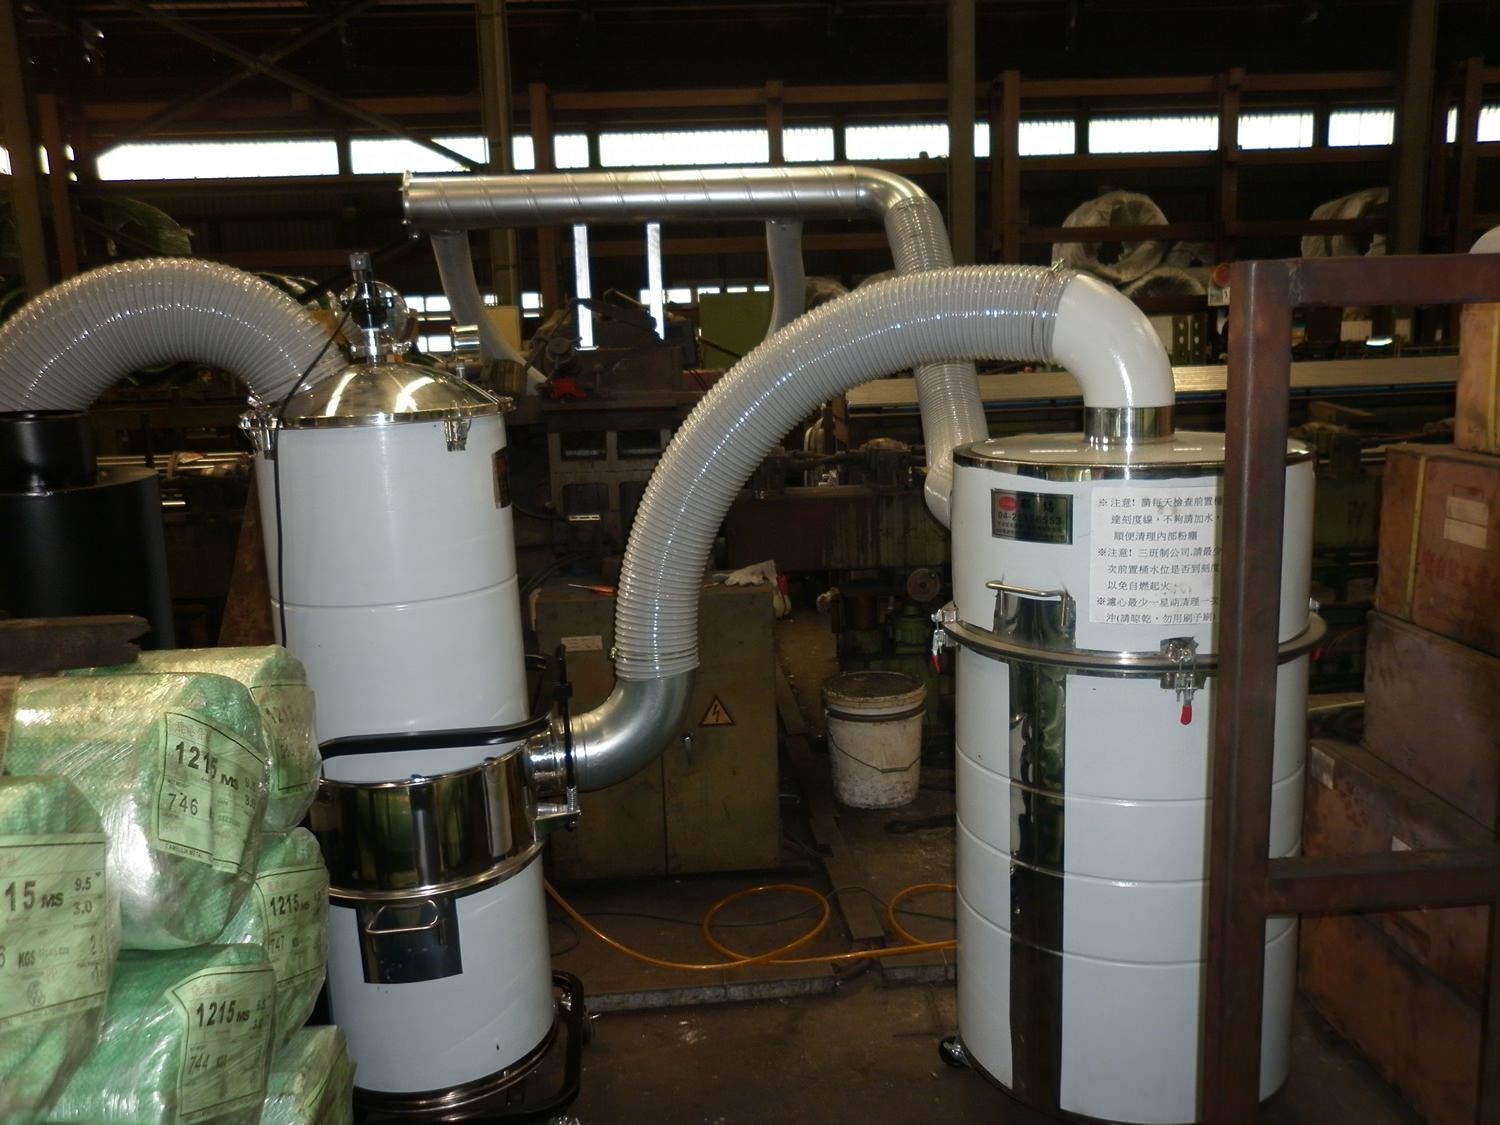 CS-103 水過濾集塵機 - 集塵機設備 集塵器 吸塵器 中央集塵 工業用集塵